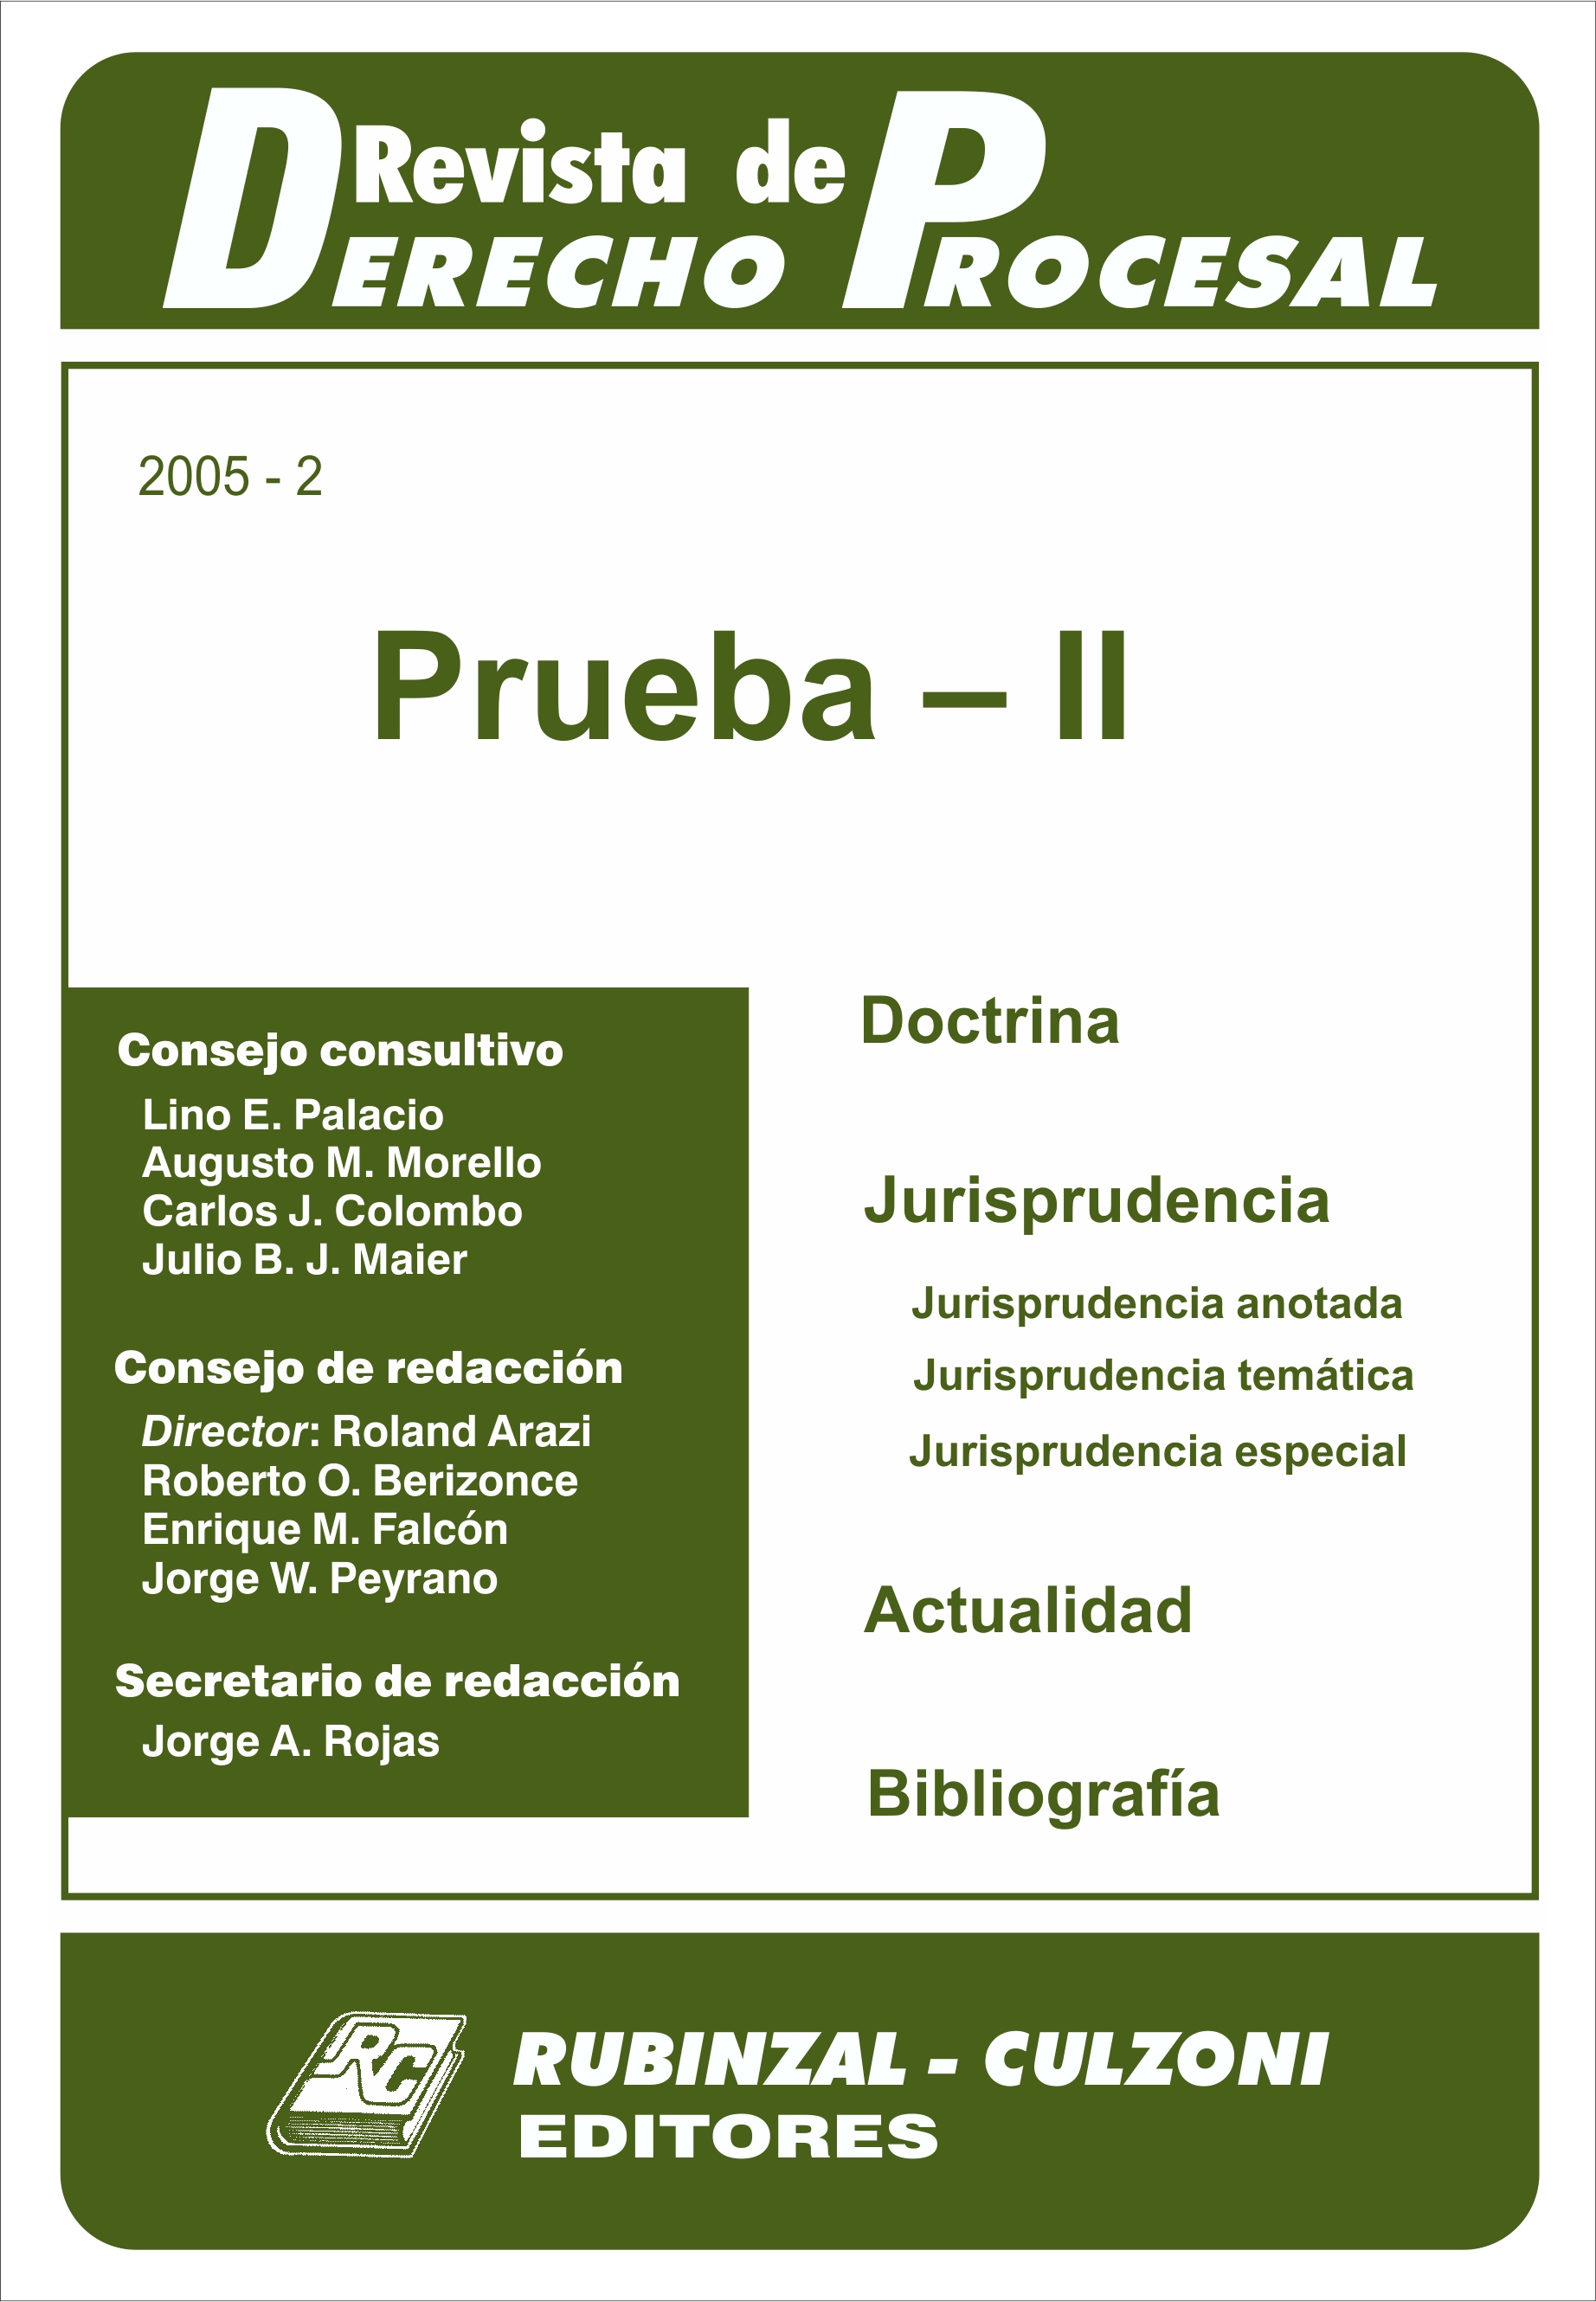 Revista de Derecho Procesal - Prueba - II.